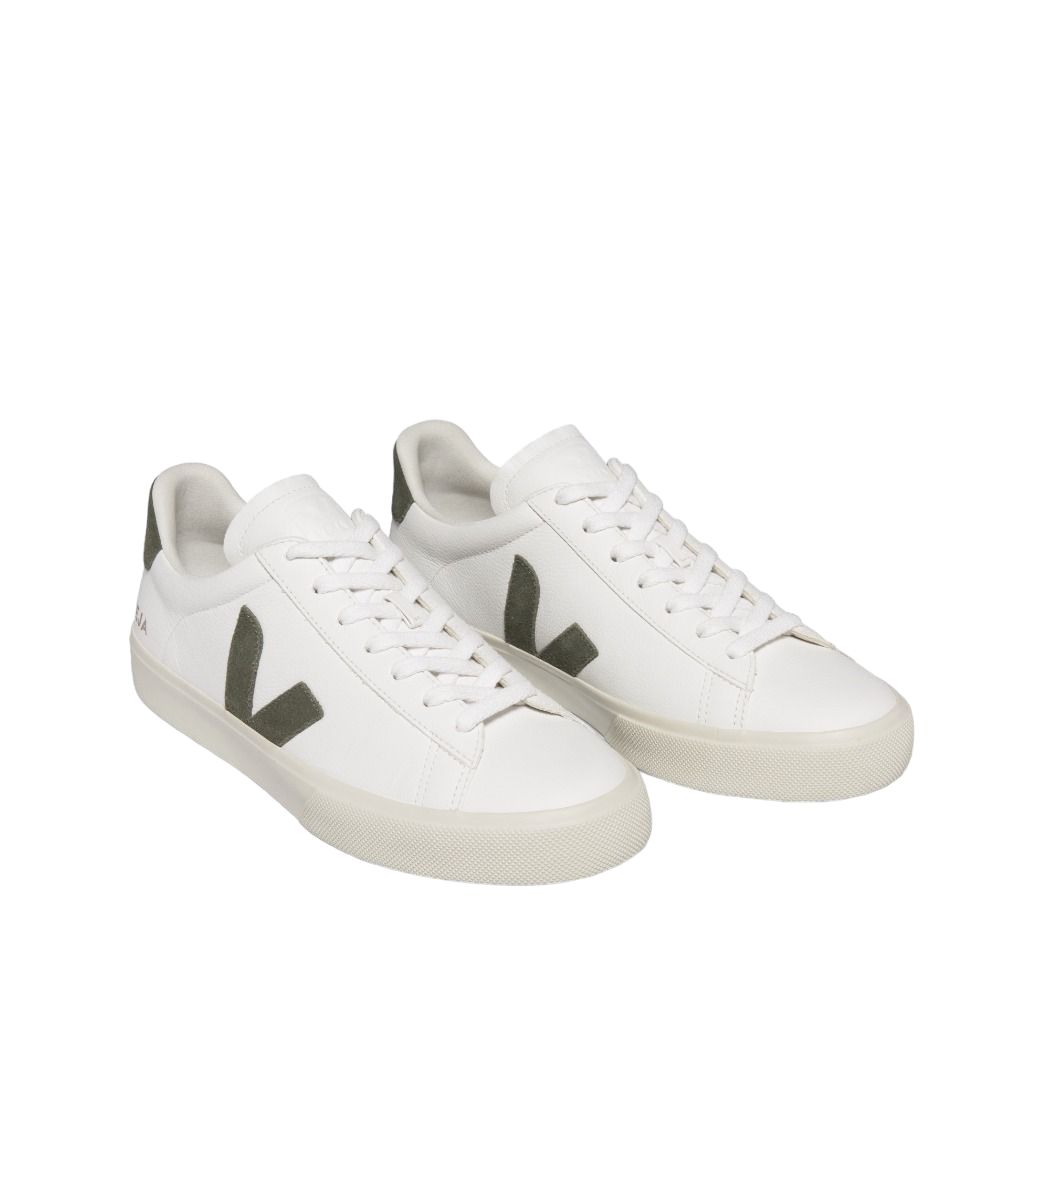 Men's Campo Chromfree Leather Shoes White/Kaki 